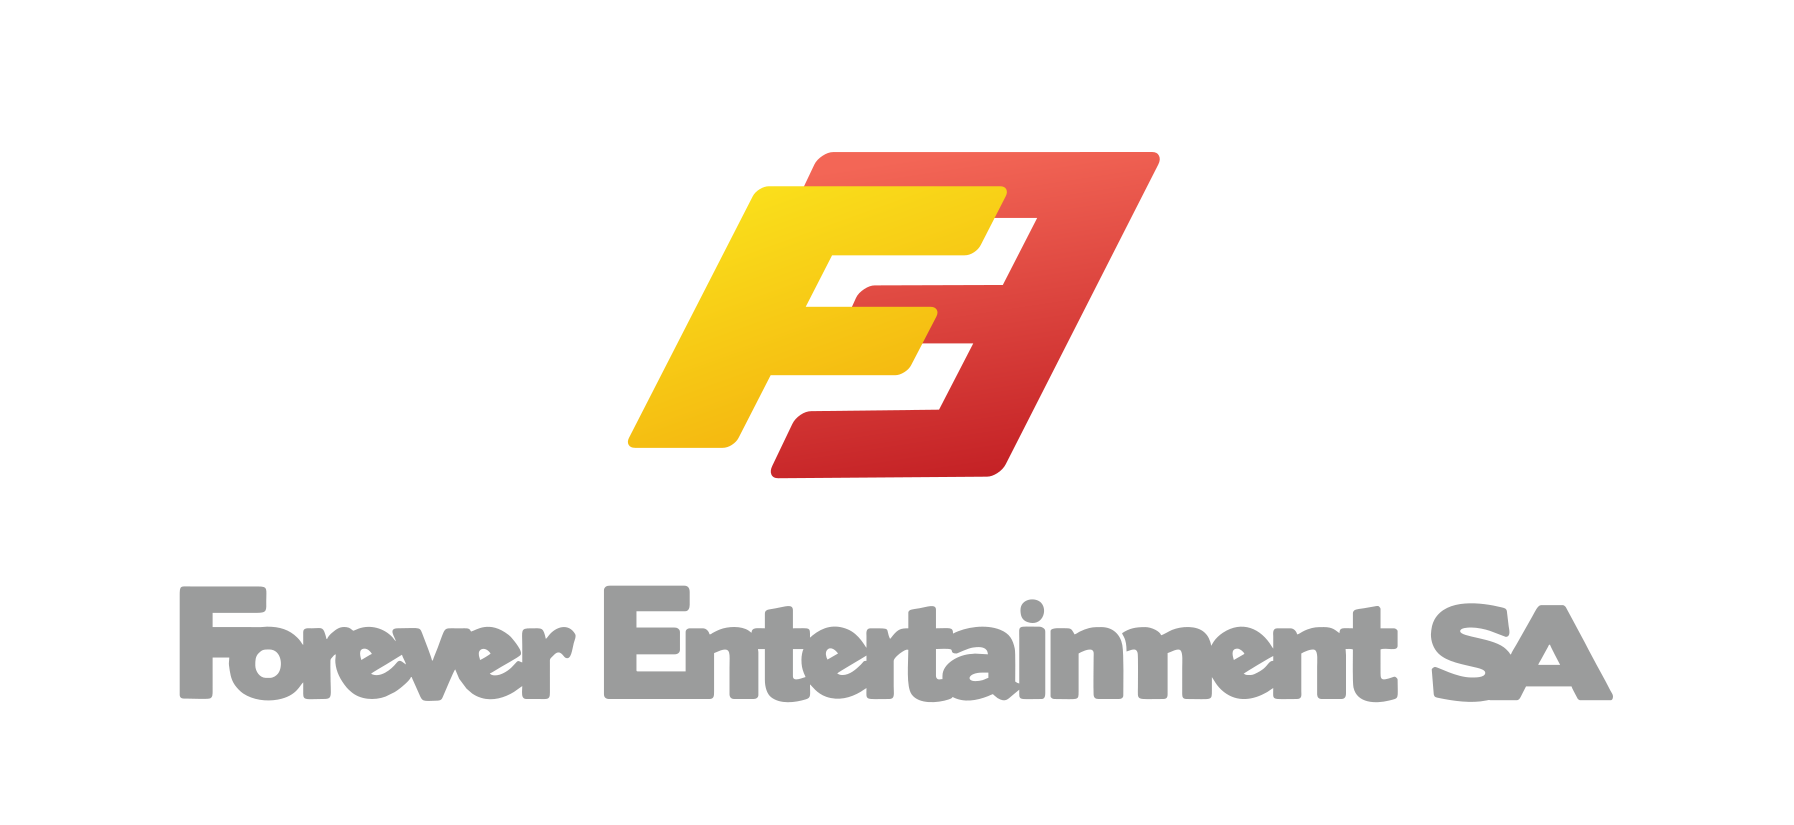 Forever Entertainment